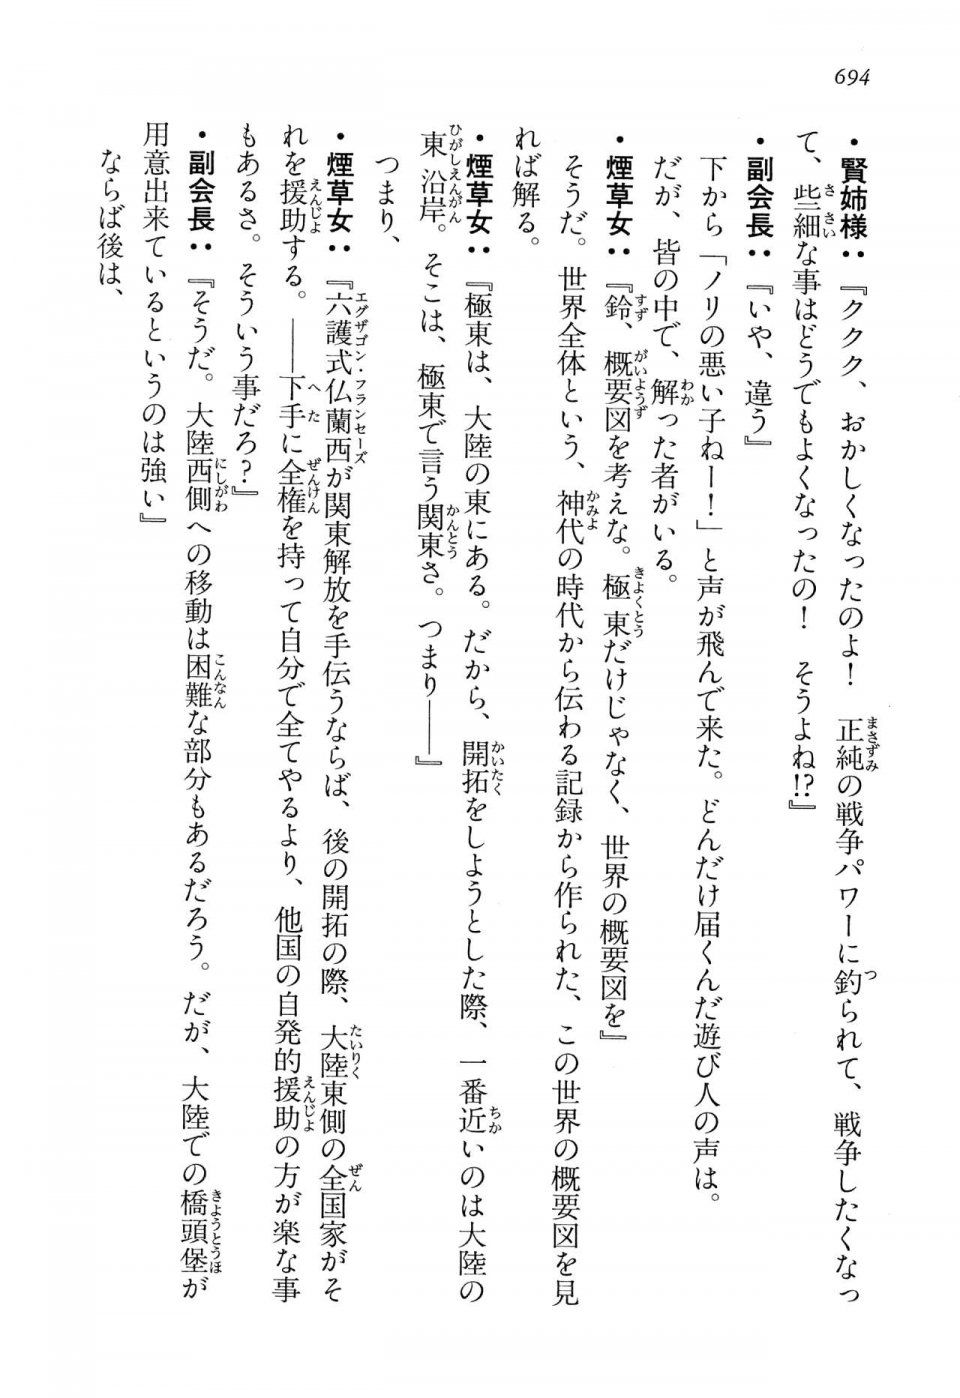 Kyoukai Senjou no Horizon LN Vol 13(6A) - Photo #694